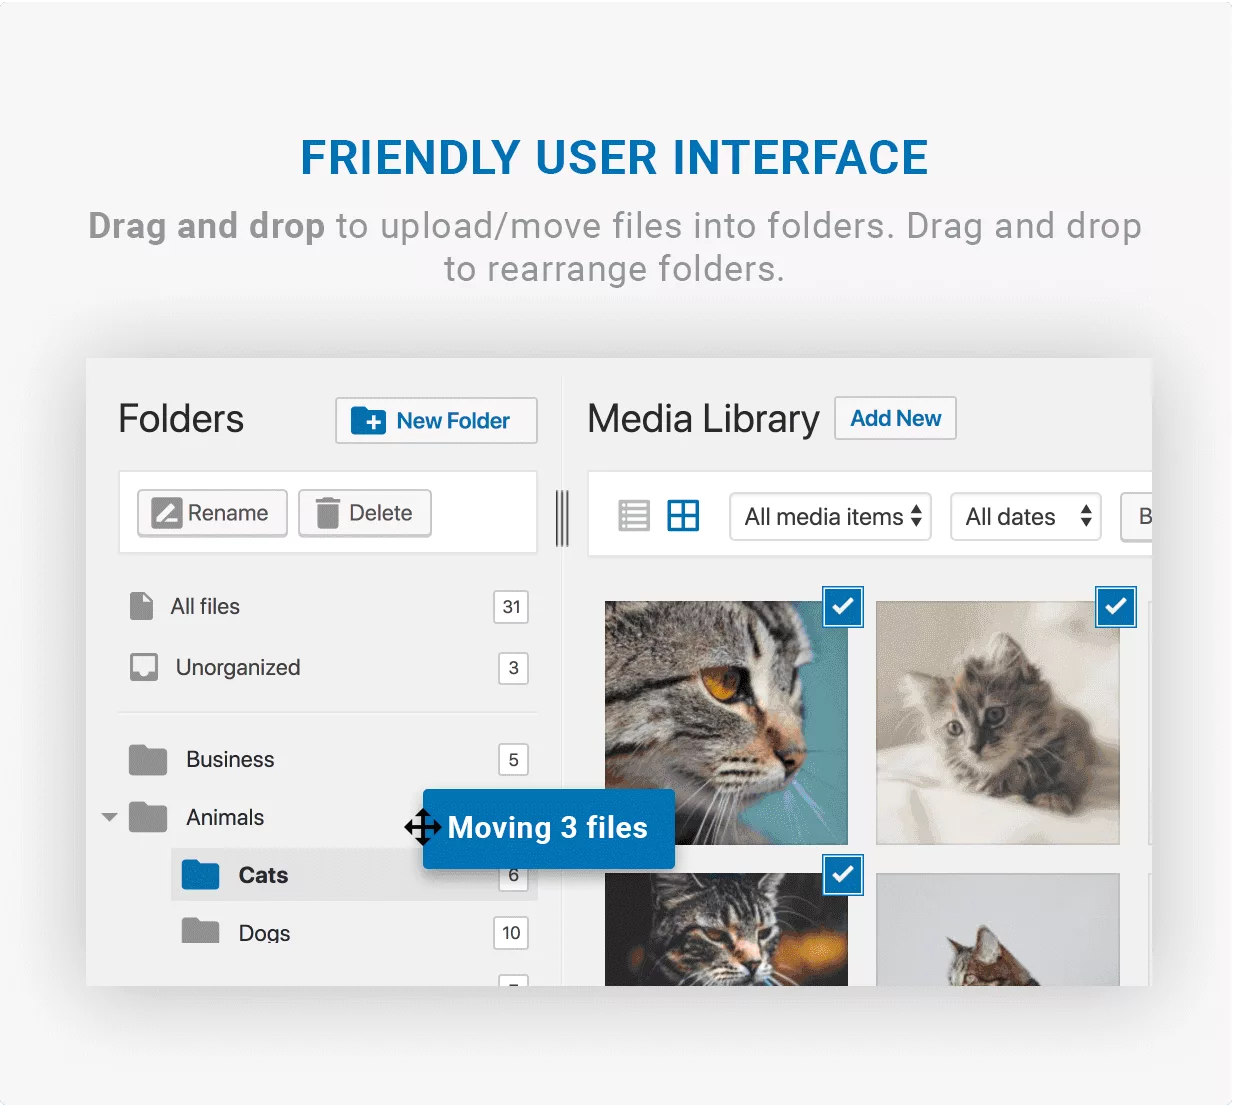 FileBird - Friendly User Interface